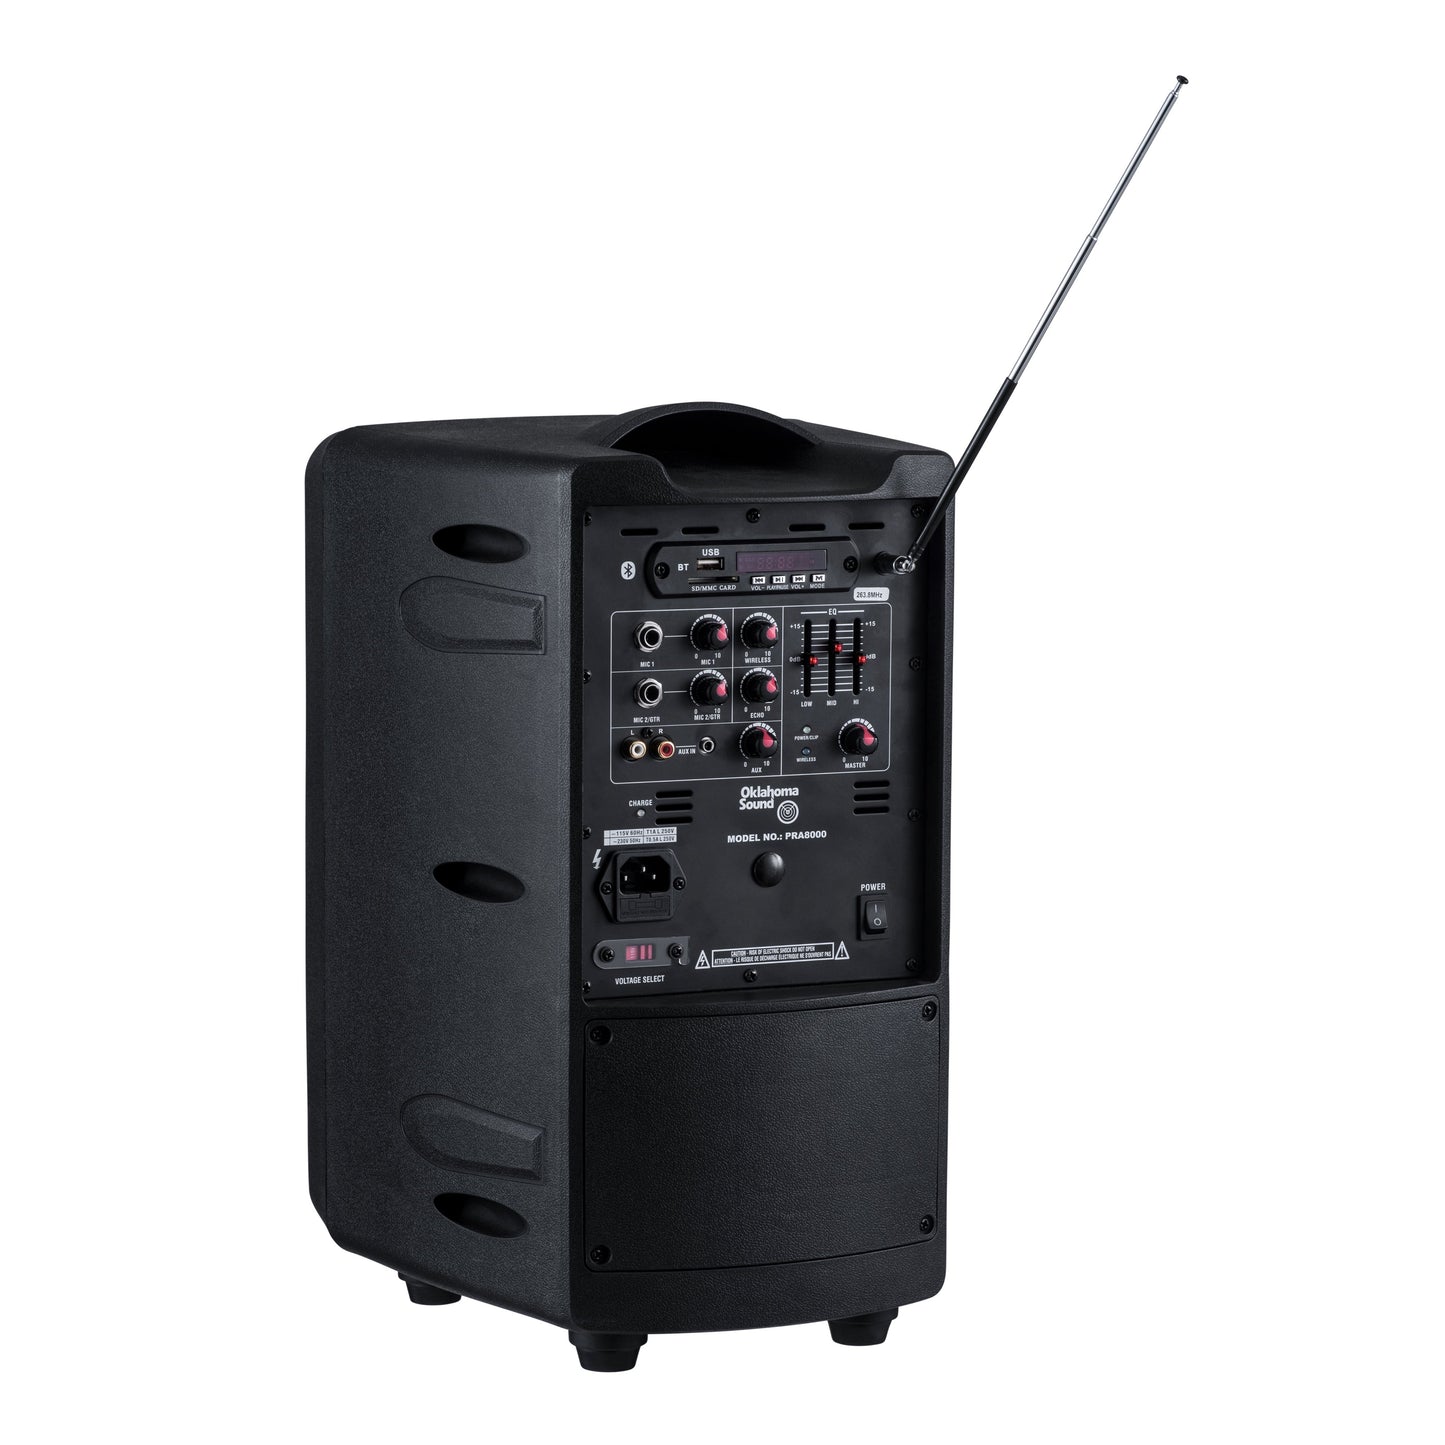 Oklahoma Sound® 40 Watt Wireless PA System w/ Wireless Handheld Mic